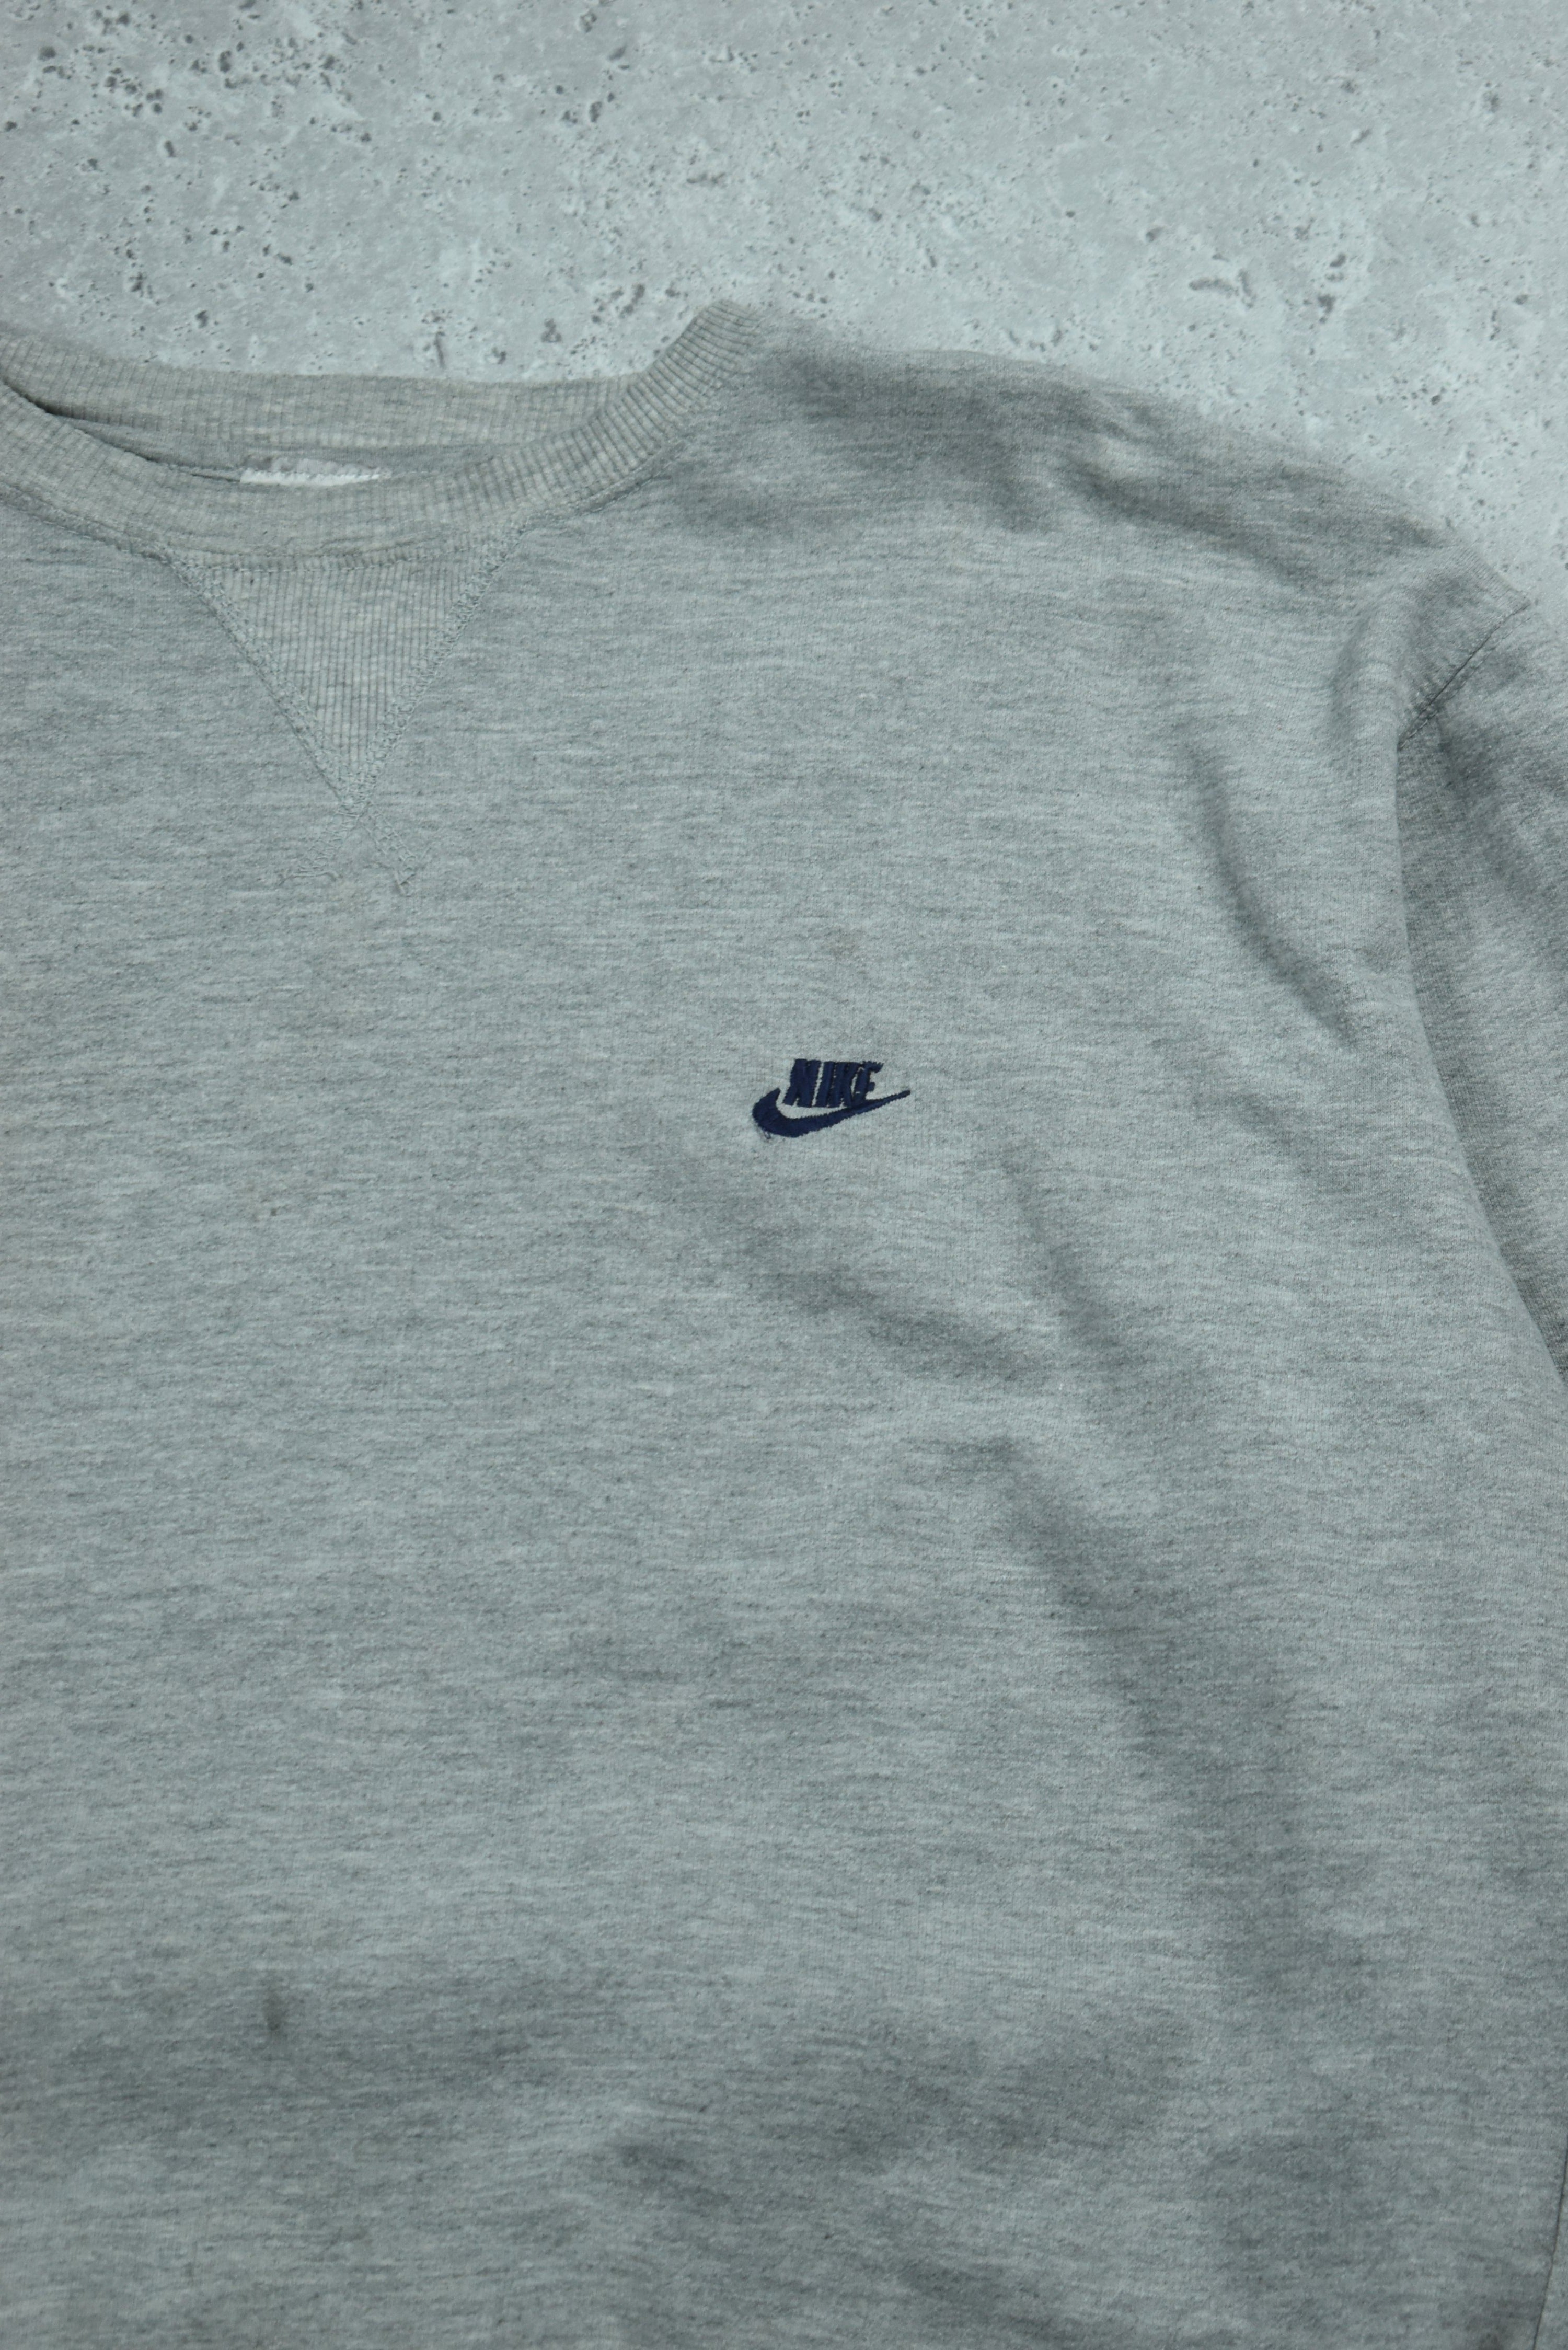 Vintage Nike Embroidery Logo Sweatshirt Medium